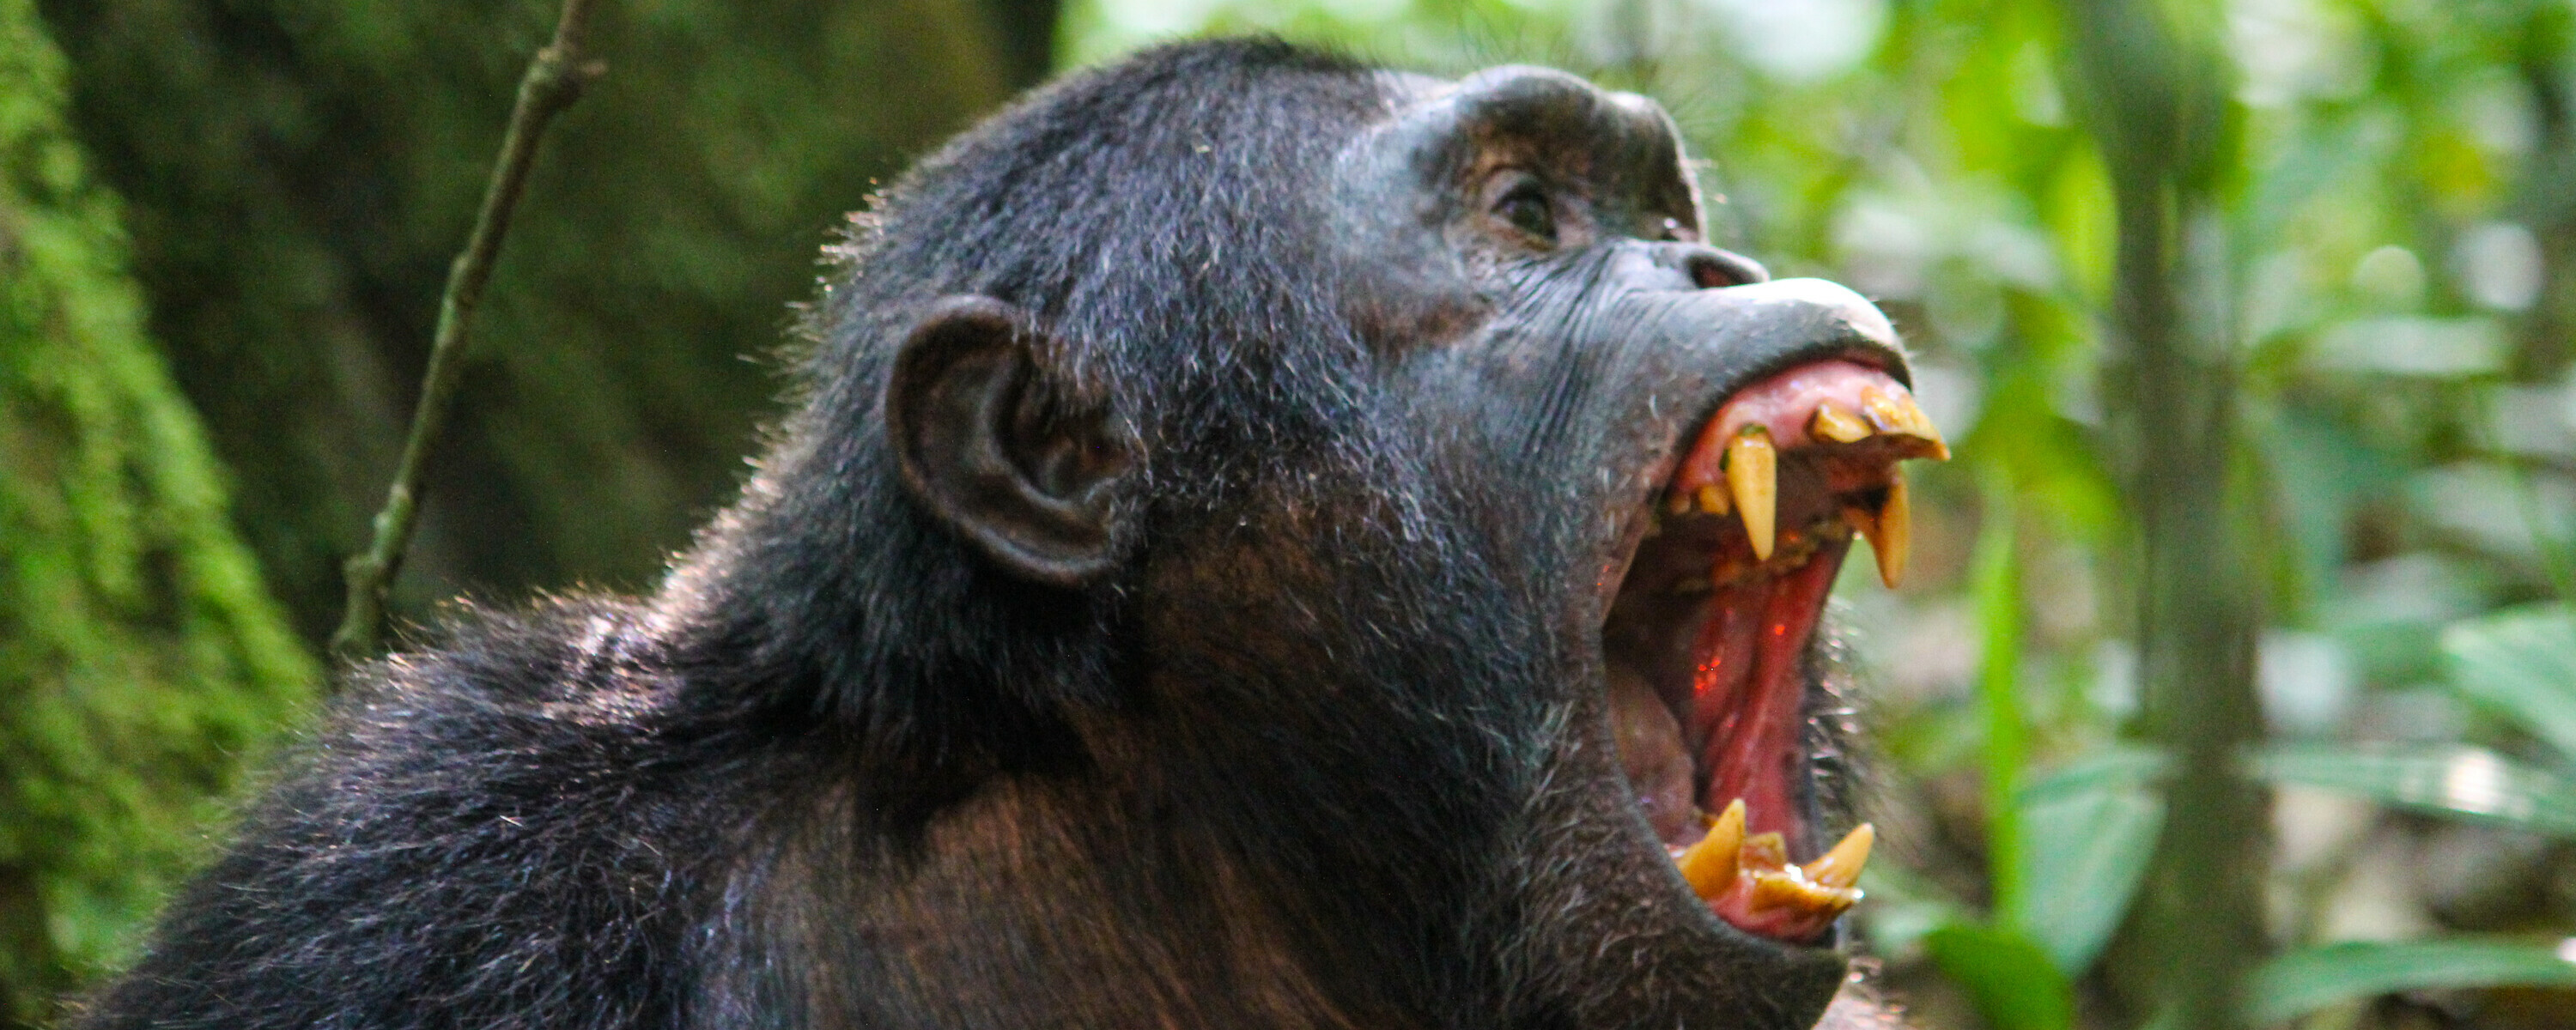 Forvent lyd, bråk og høyt tempo når vi sporer sjimpansene. Unik opplevelse!